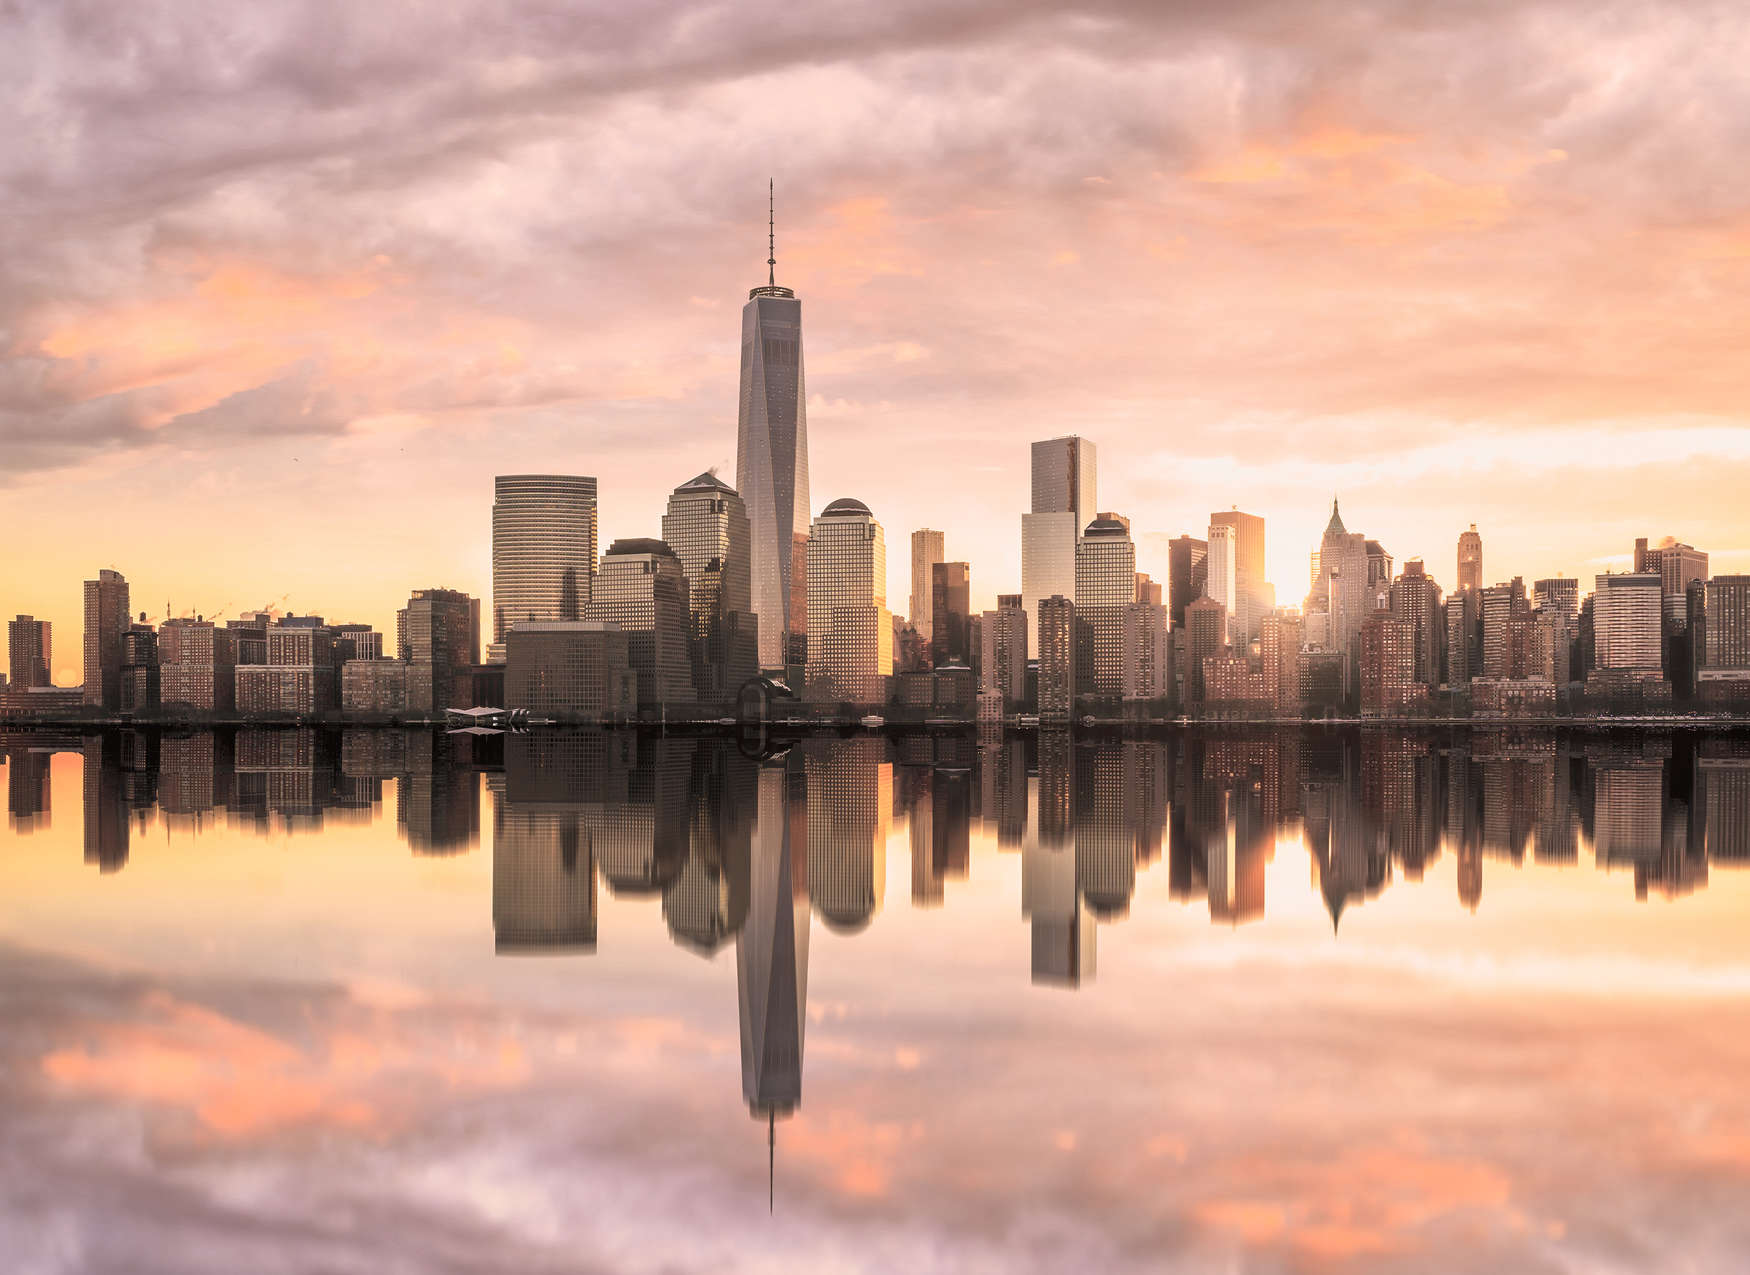             Digital behang New York Skyline in de Avond - Grijs, Oranje, Geel
        